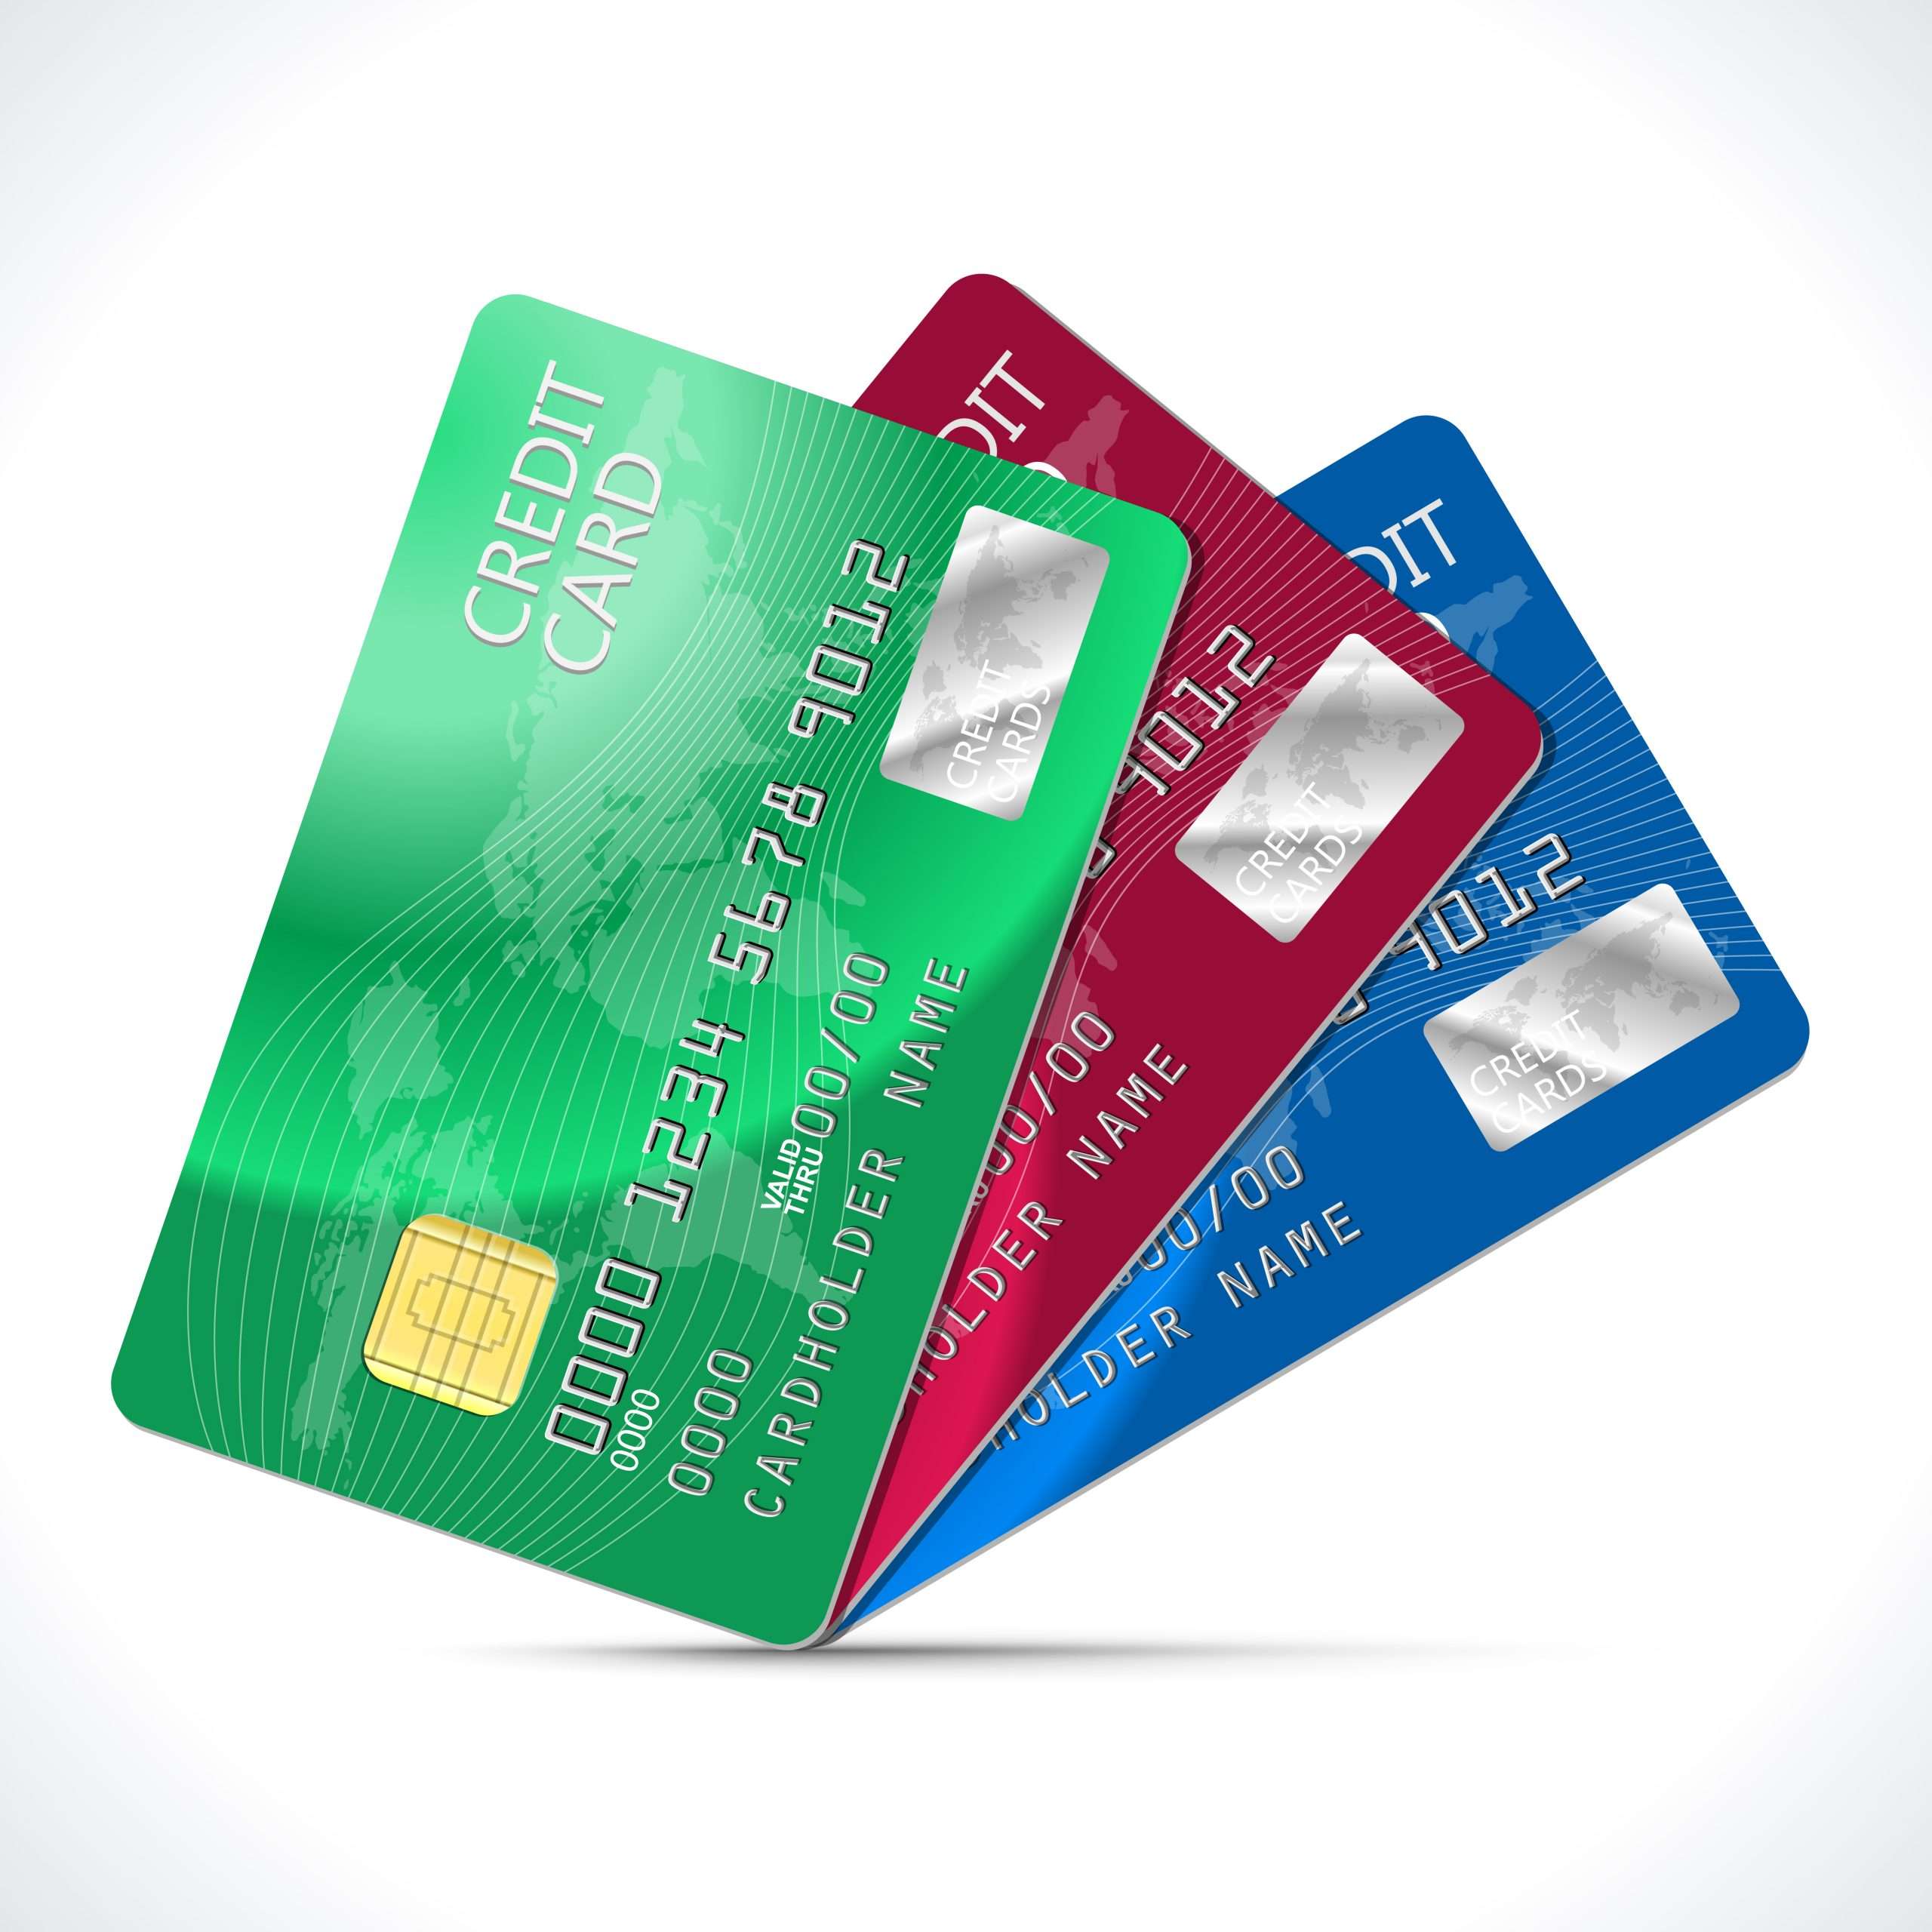 Le top 5 des meilleures cartes de crédit